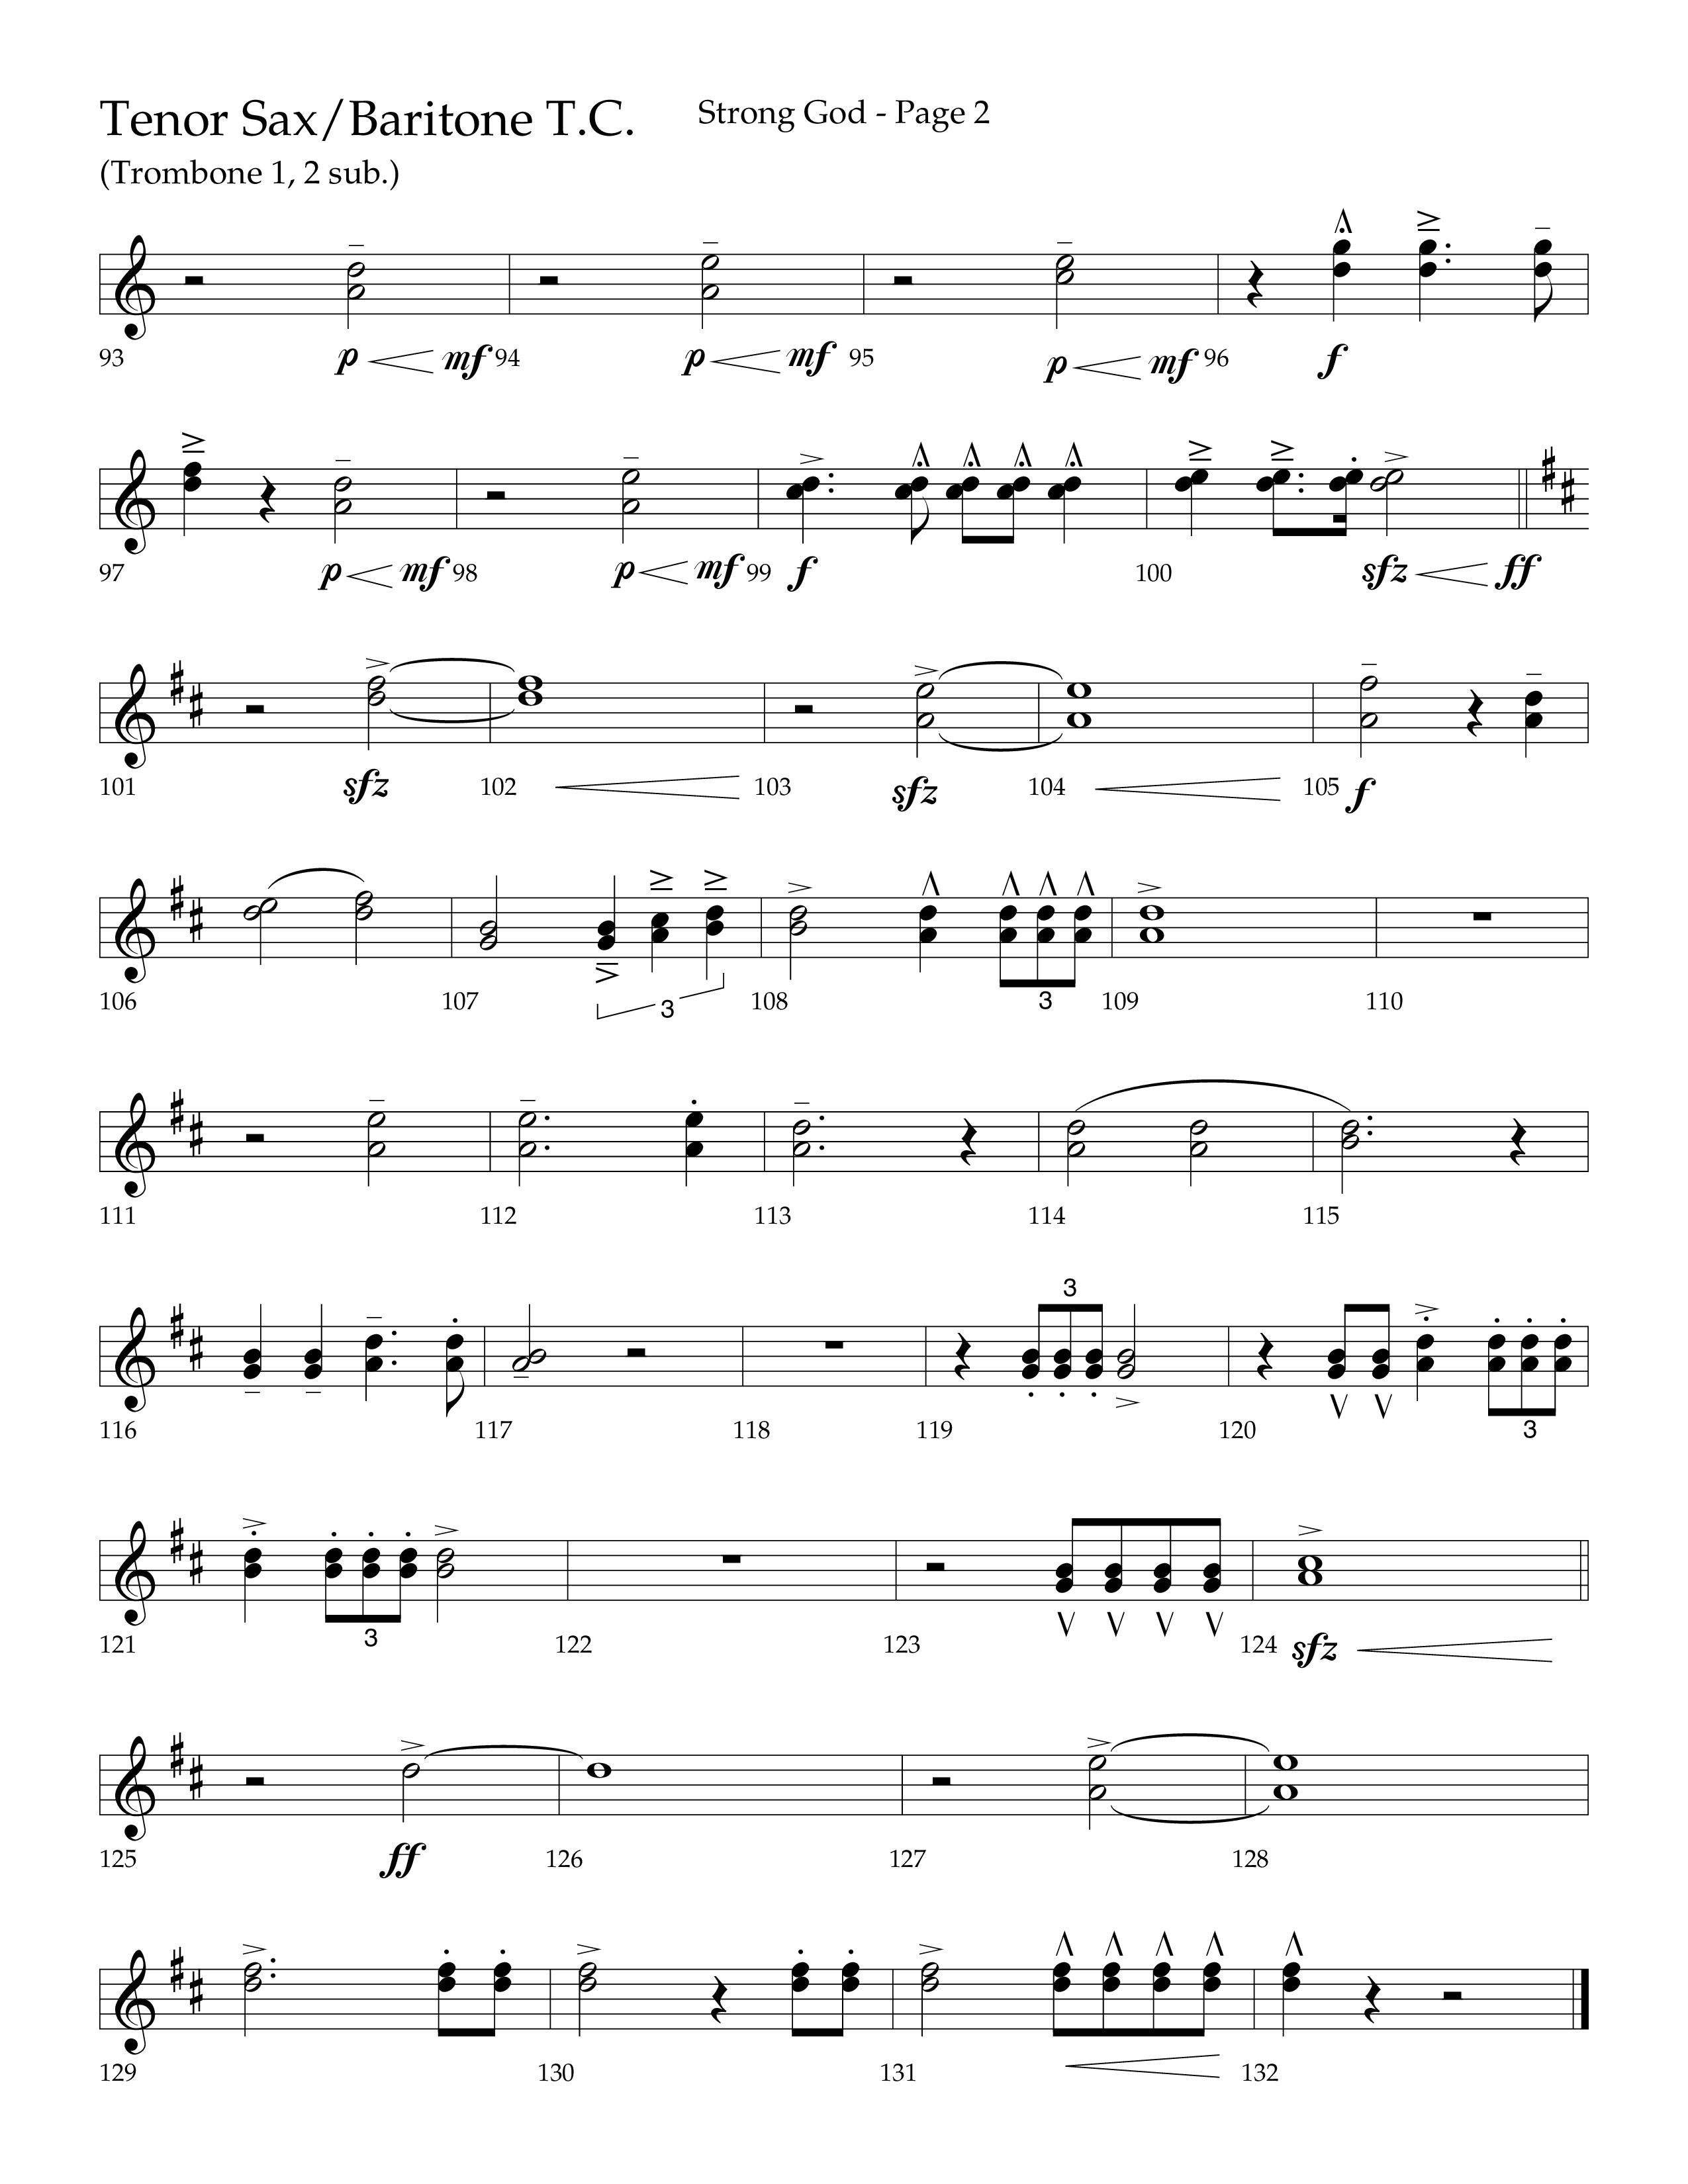 Strong God (Choral Anthem SATB) Tenor Sax/Baritone T.C. (Lifeway Choral / Arr. Craig Adams / Arr. Bruce Cokeroft / Orch. Craig Adams)